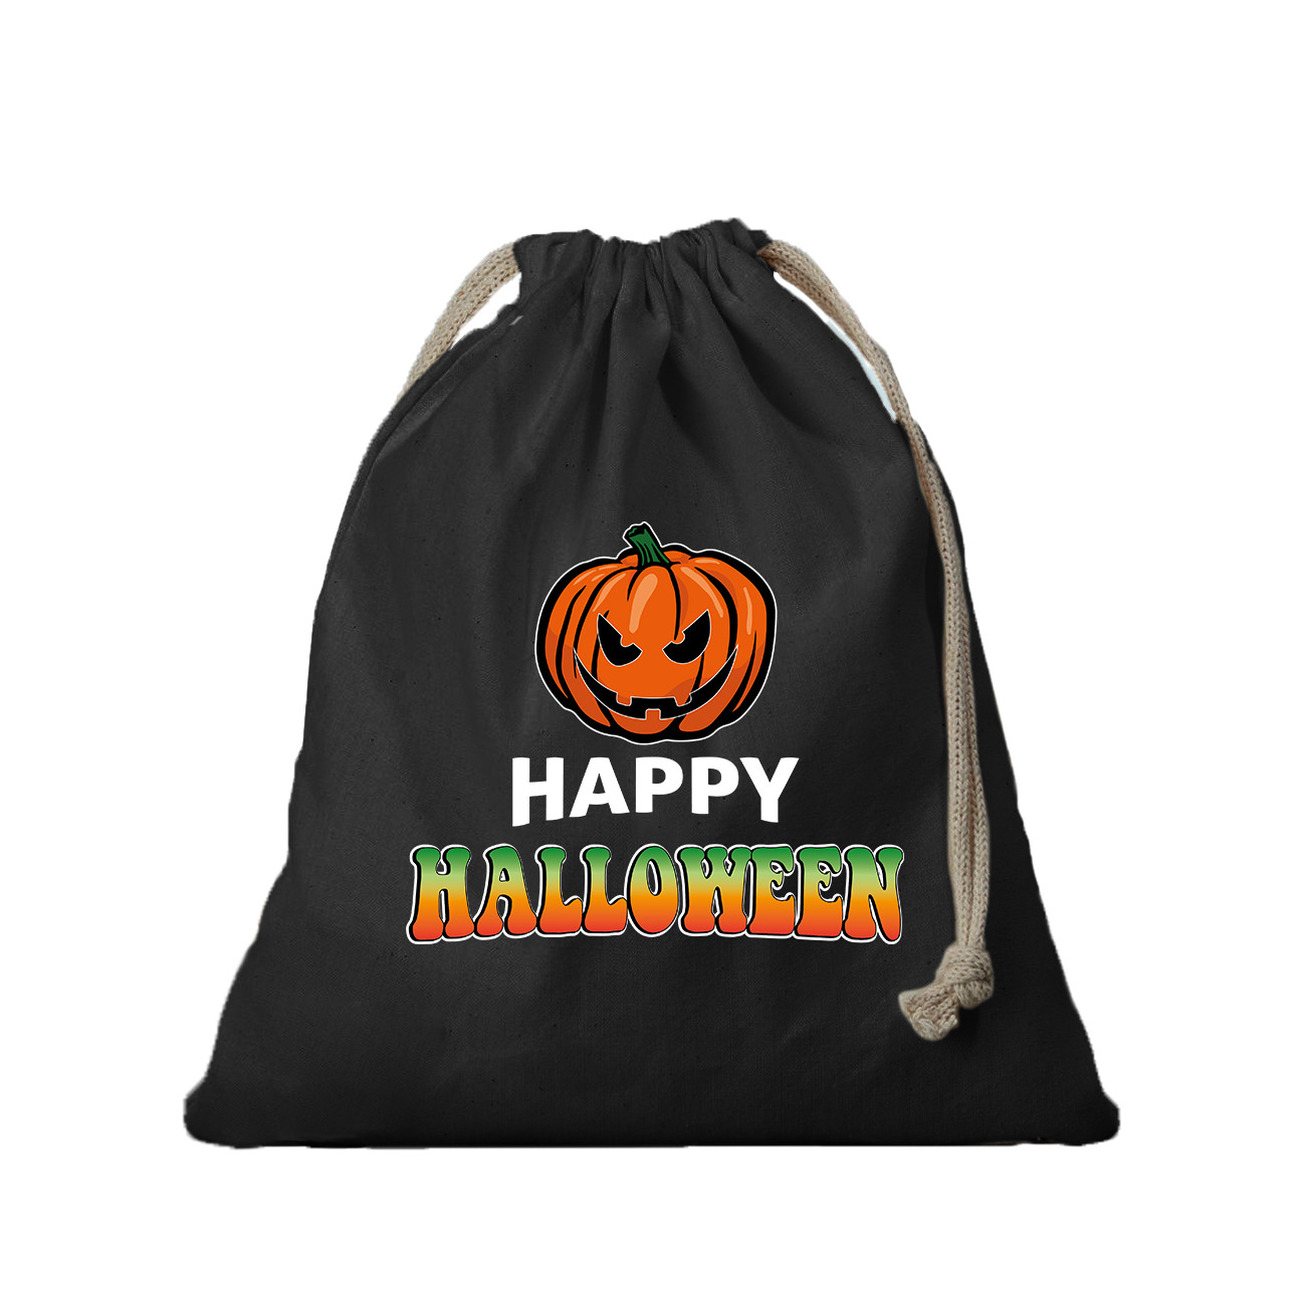 6x Katoenen happy halloween snoep tasje met pompoen zwart 25 x 30 cm